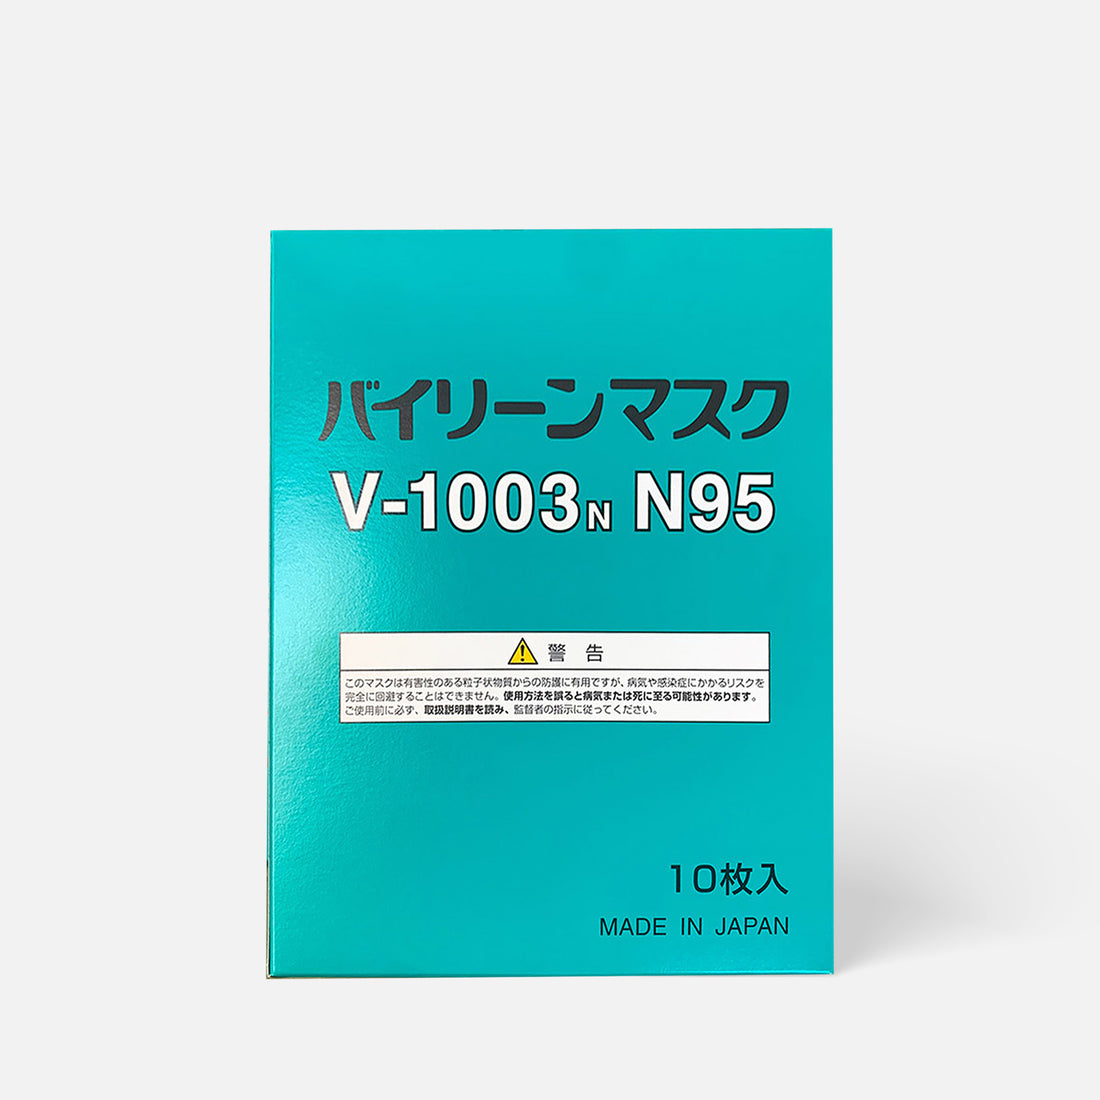 Japanese Vilene Company V-1003N N95 Masks